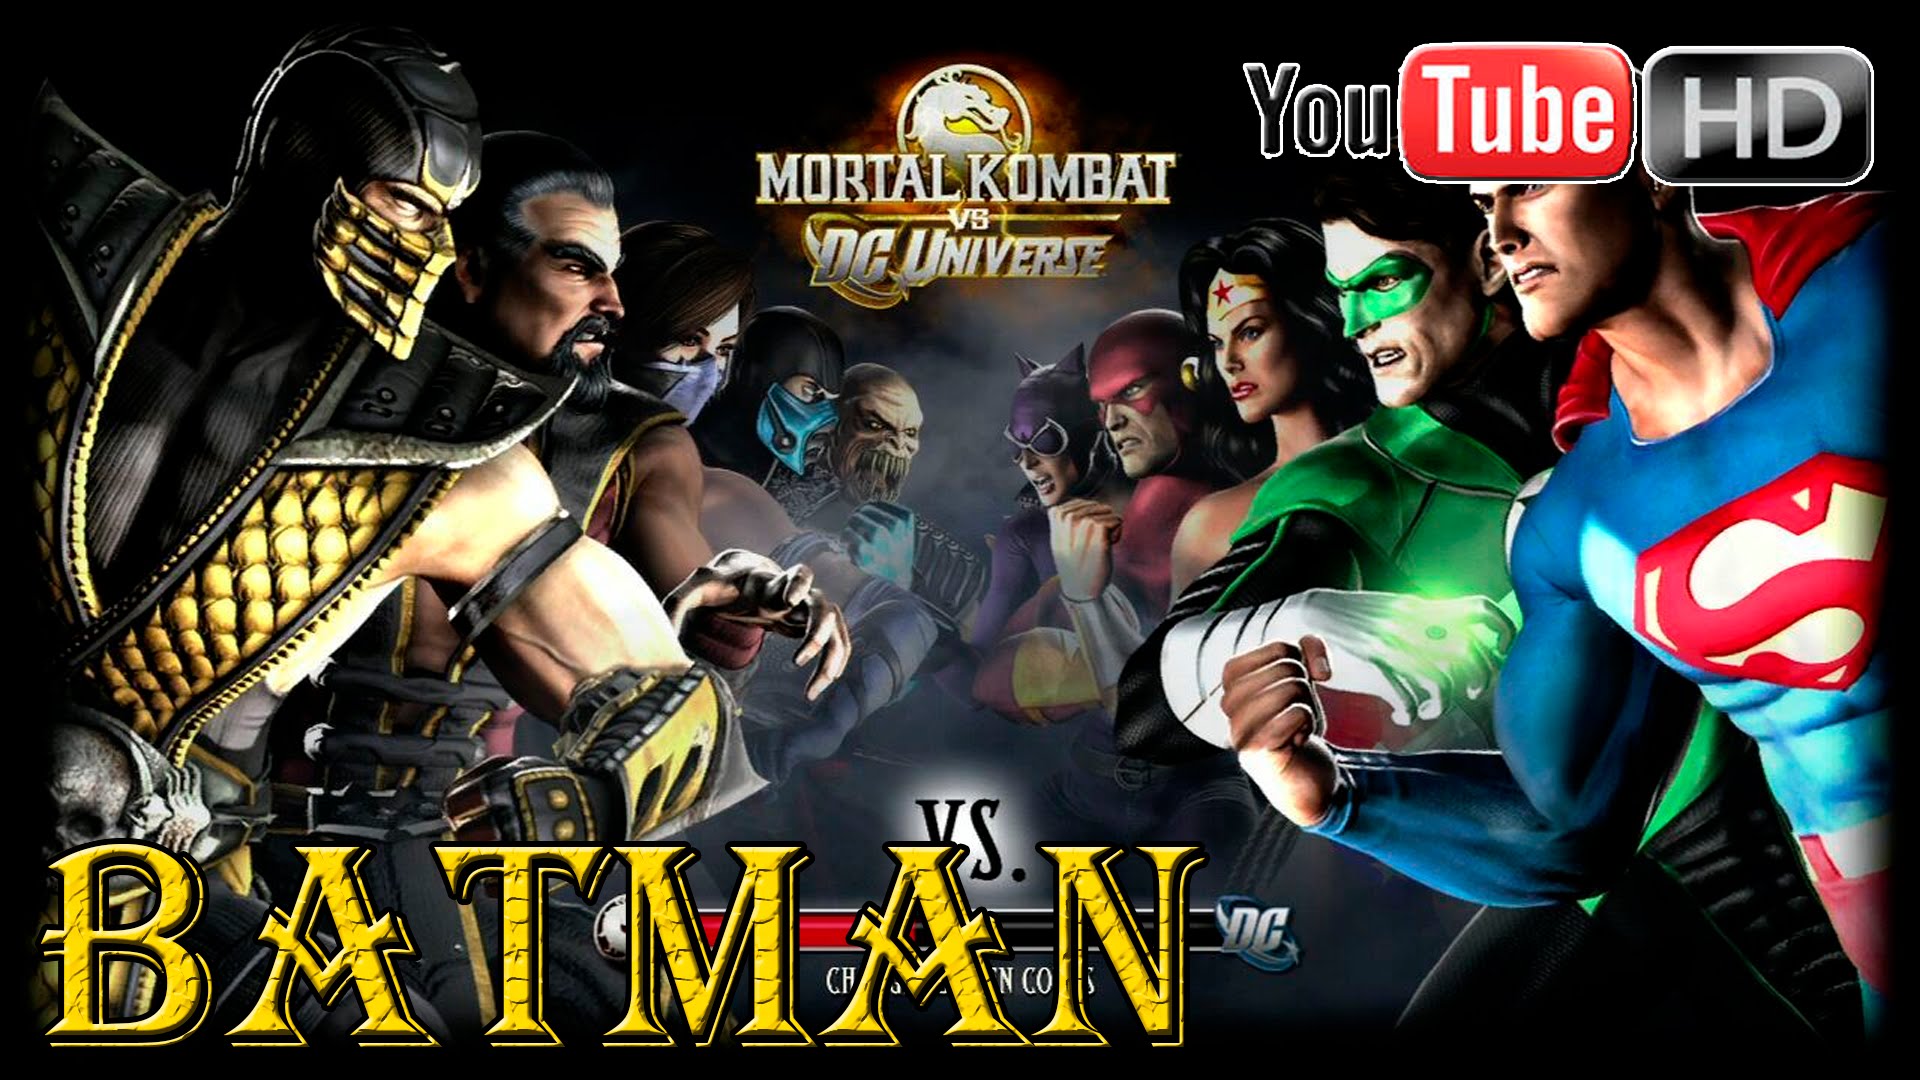 Mortal Kombat Vs. DC Universe Backgrounds, Compatible - PC, Mobile, Gadgets| 1920x1080 px